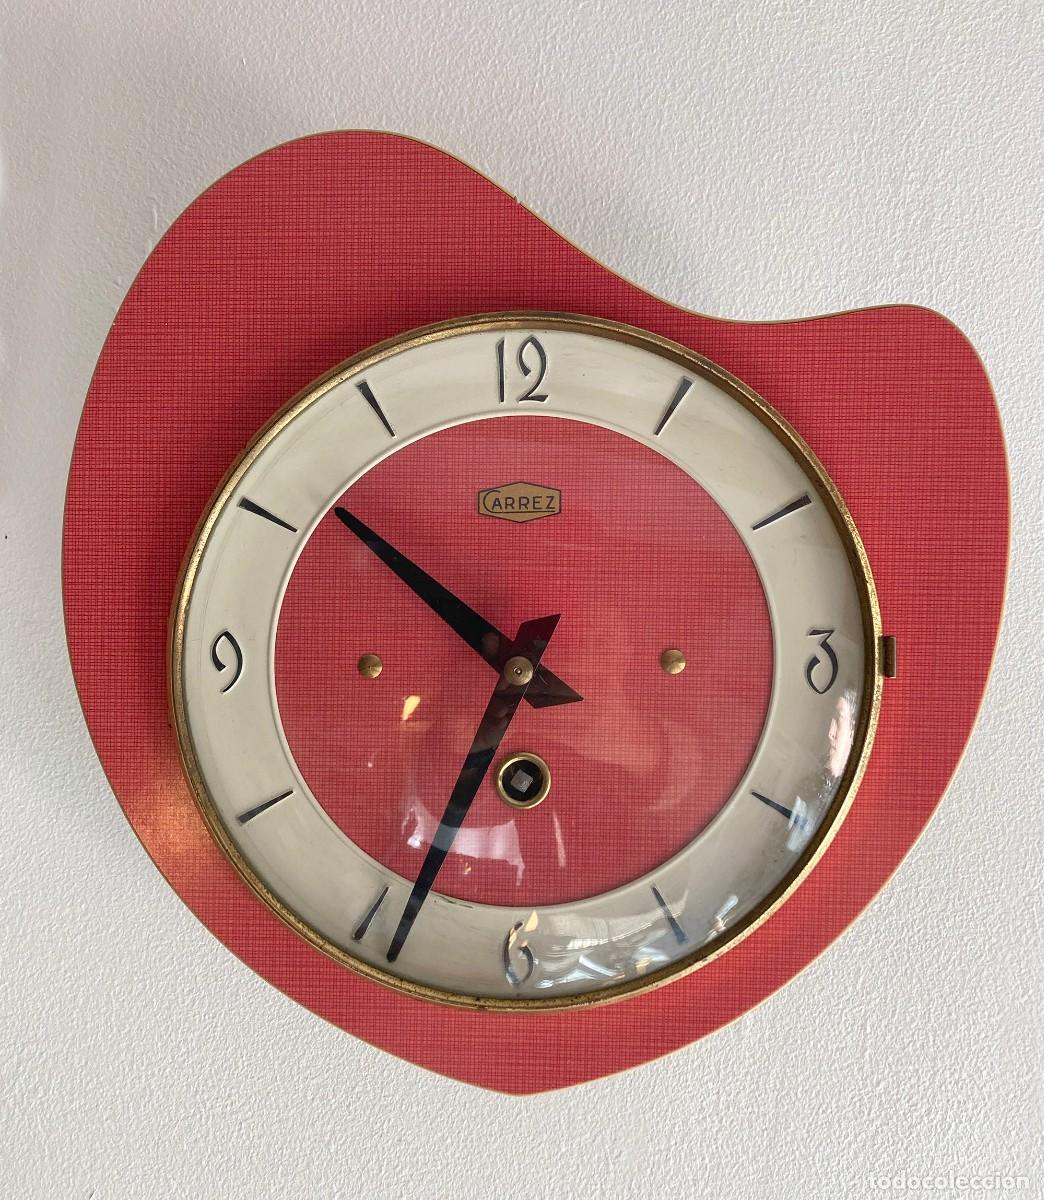 reloj de pared vintage - Compra venta en todocoleccion